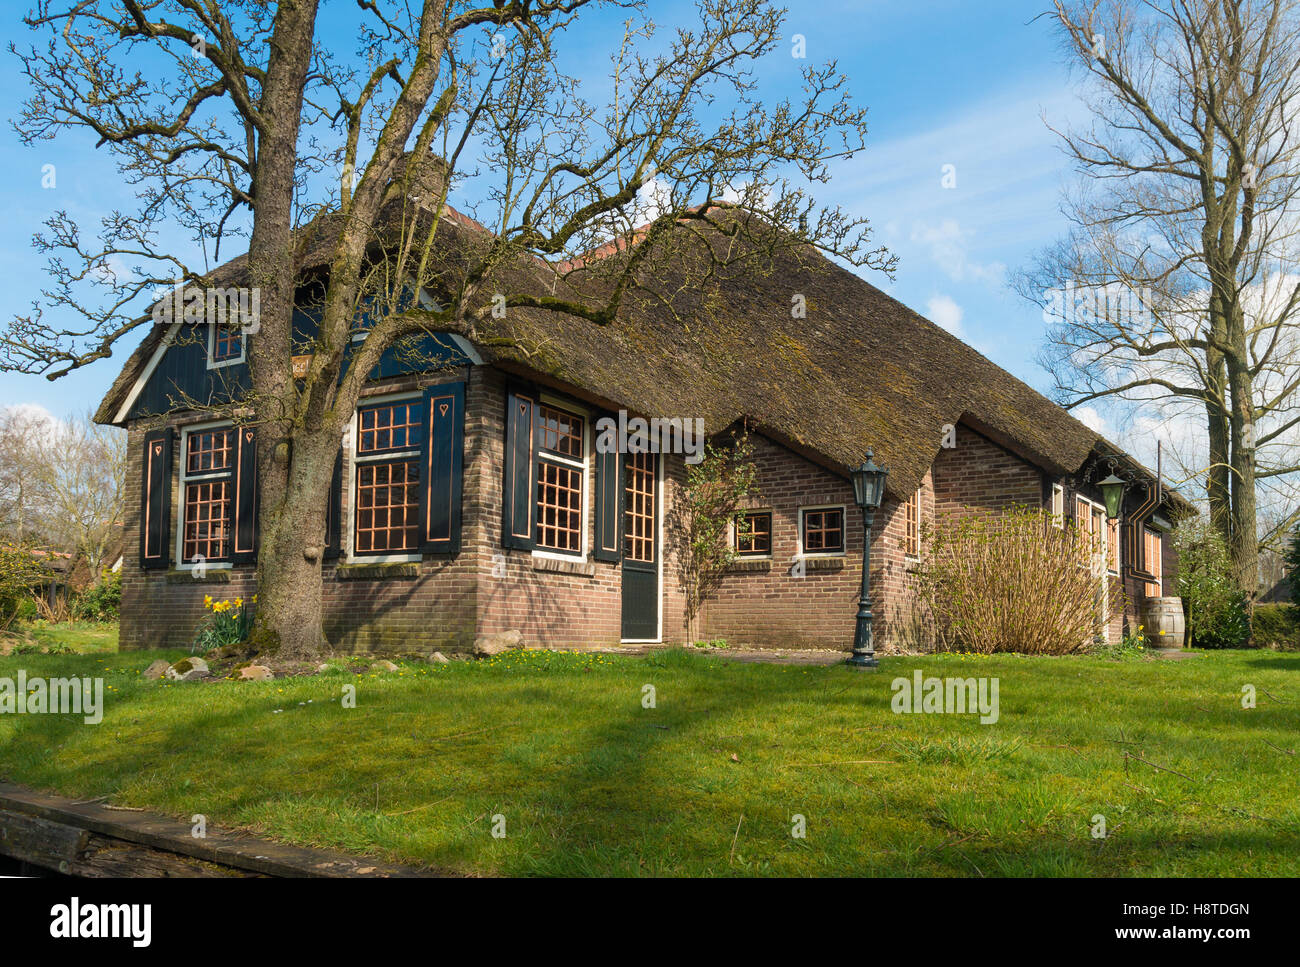 Maison de campagne typiquement hollandais avec de la paille en toiture  Giethoorn, Pays-Bas Photo Stock - Alamy